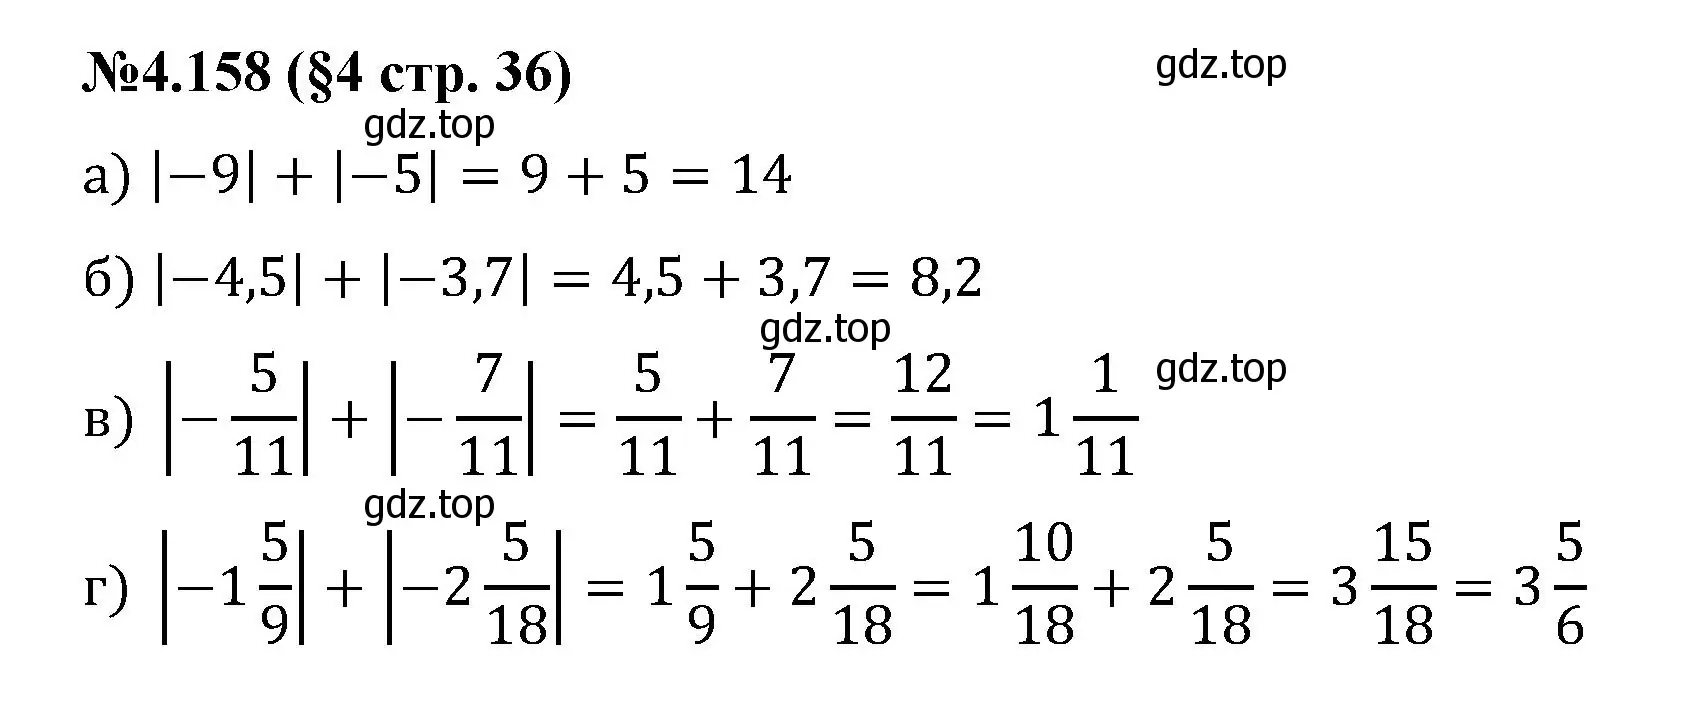 Решение номер 4.158 (страница 36) гдз по математике 6 класс Виленкин, Жохов, учебник 2 часть